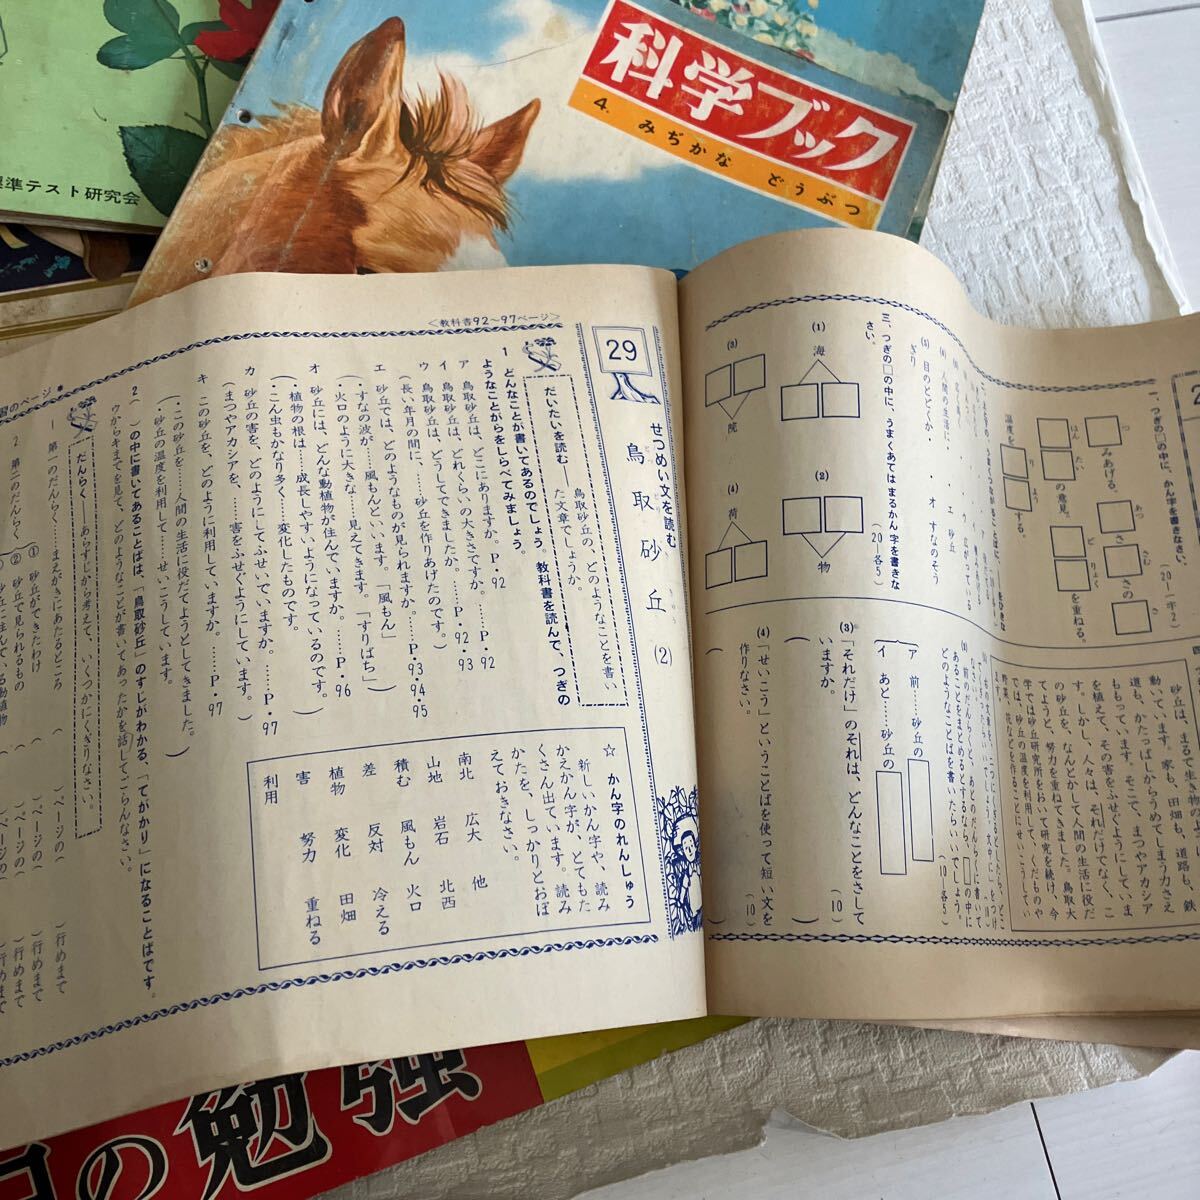 e285-80 старая книга обучающий материал Showa Retro печатная продукция совместно каждый день. . чуть более наука книжка Pinocchio Shogakukan Inc. манера письма тест книга с картинками интеллектуальное развитие образование . трещина изрядно иметь 